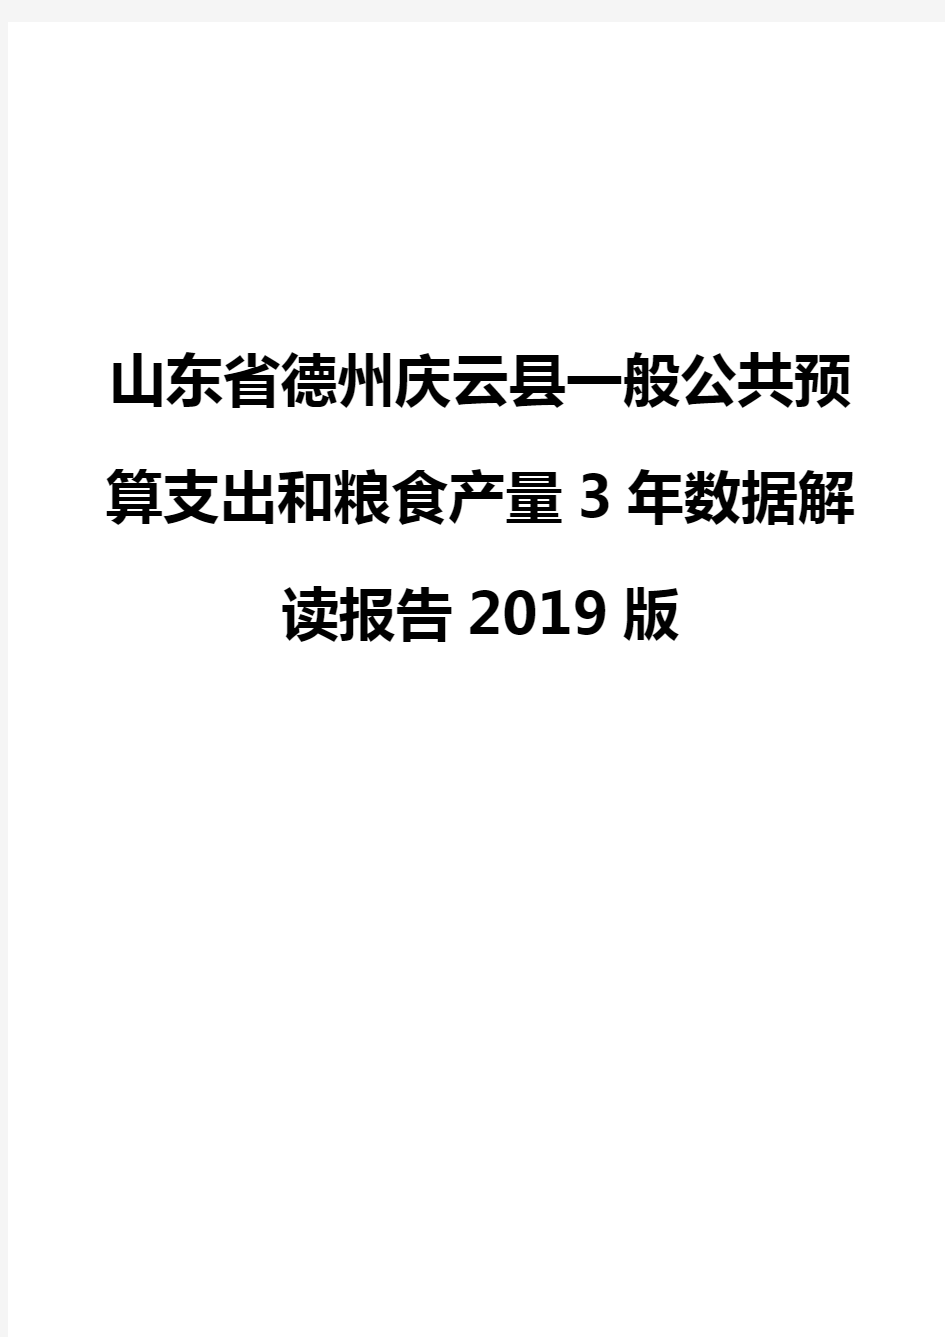 山东省德州庆云县一般公共预算支出和粮食产量3年数据解读报告2019版